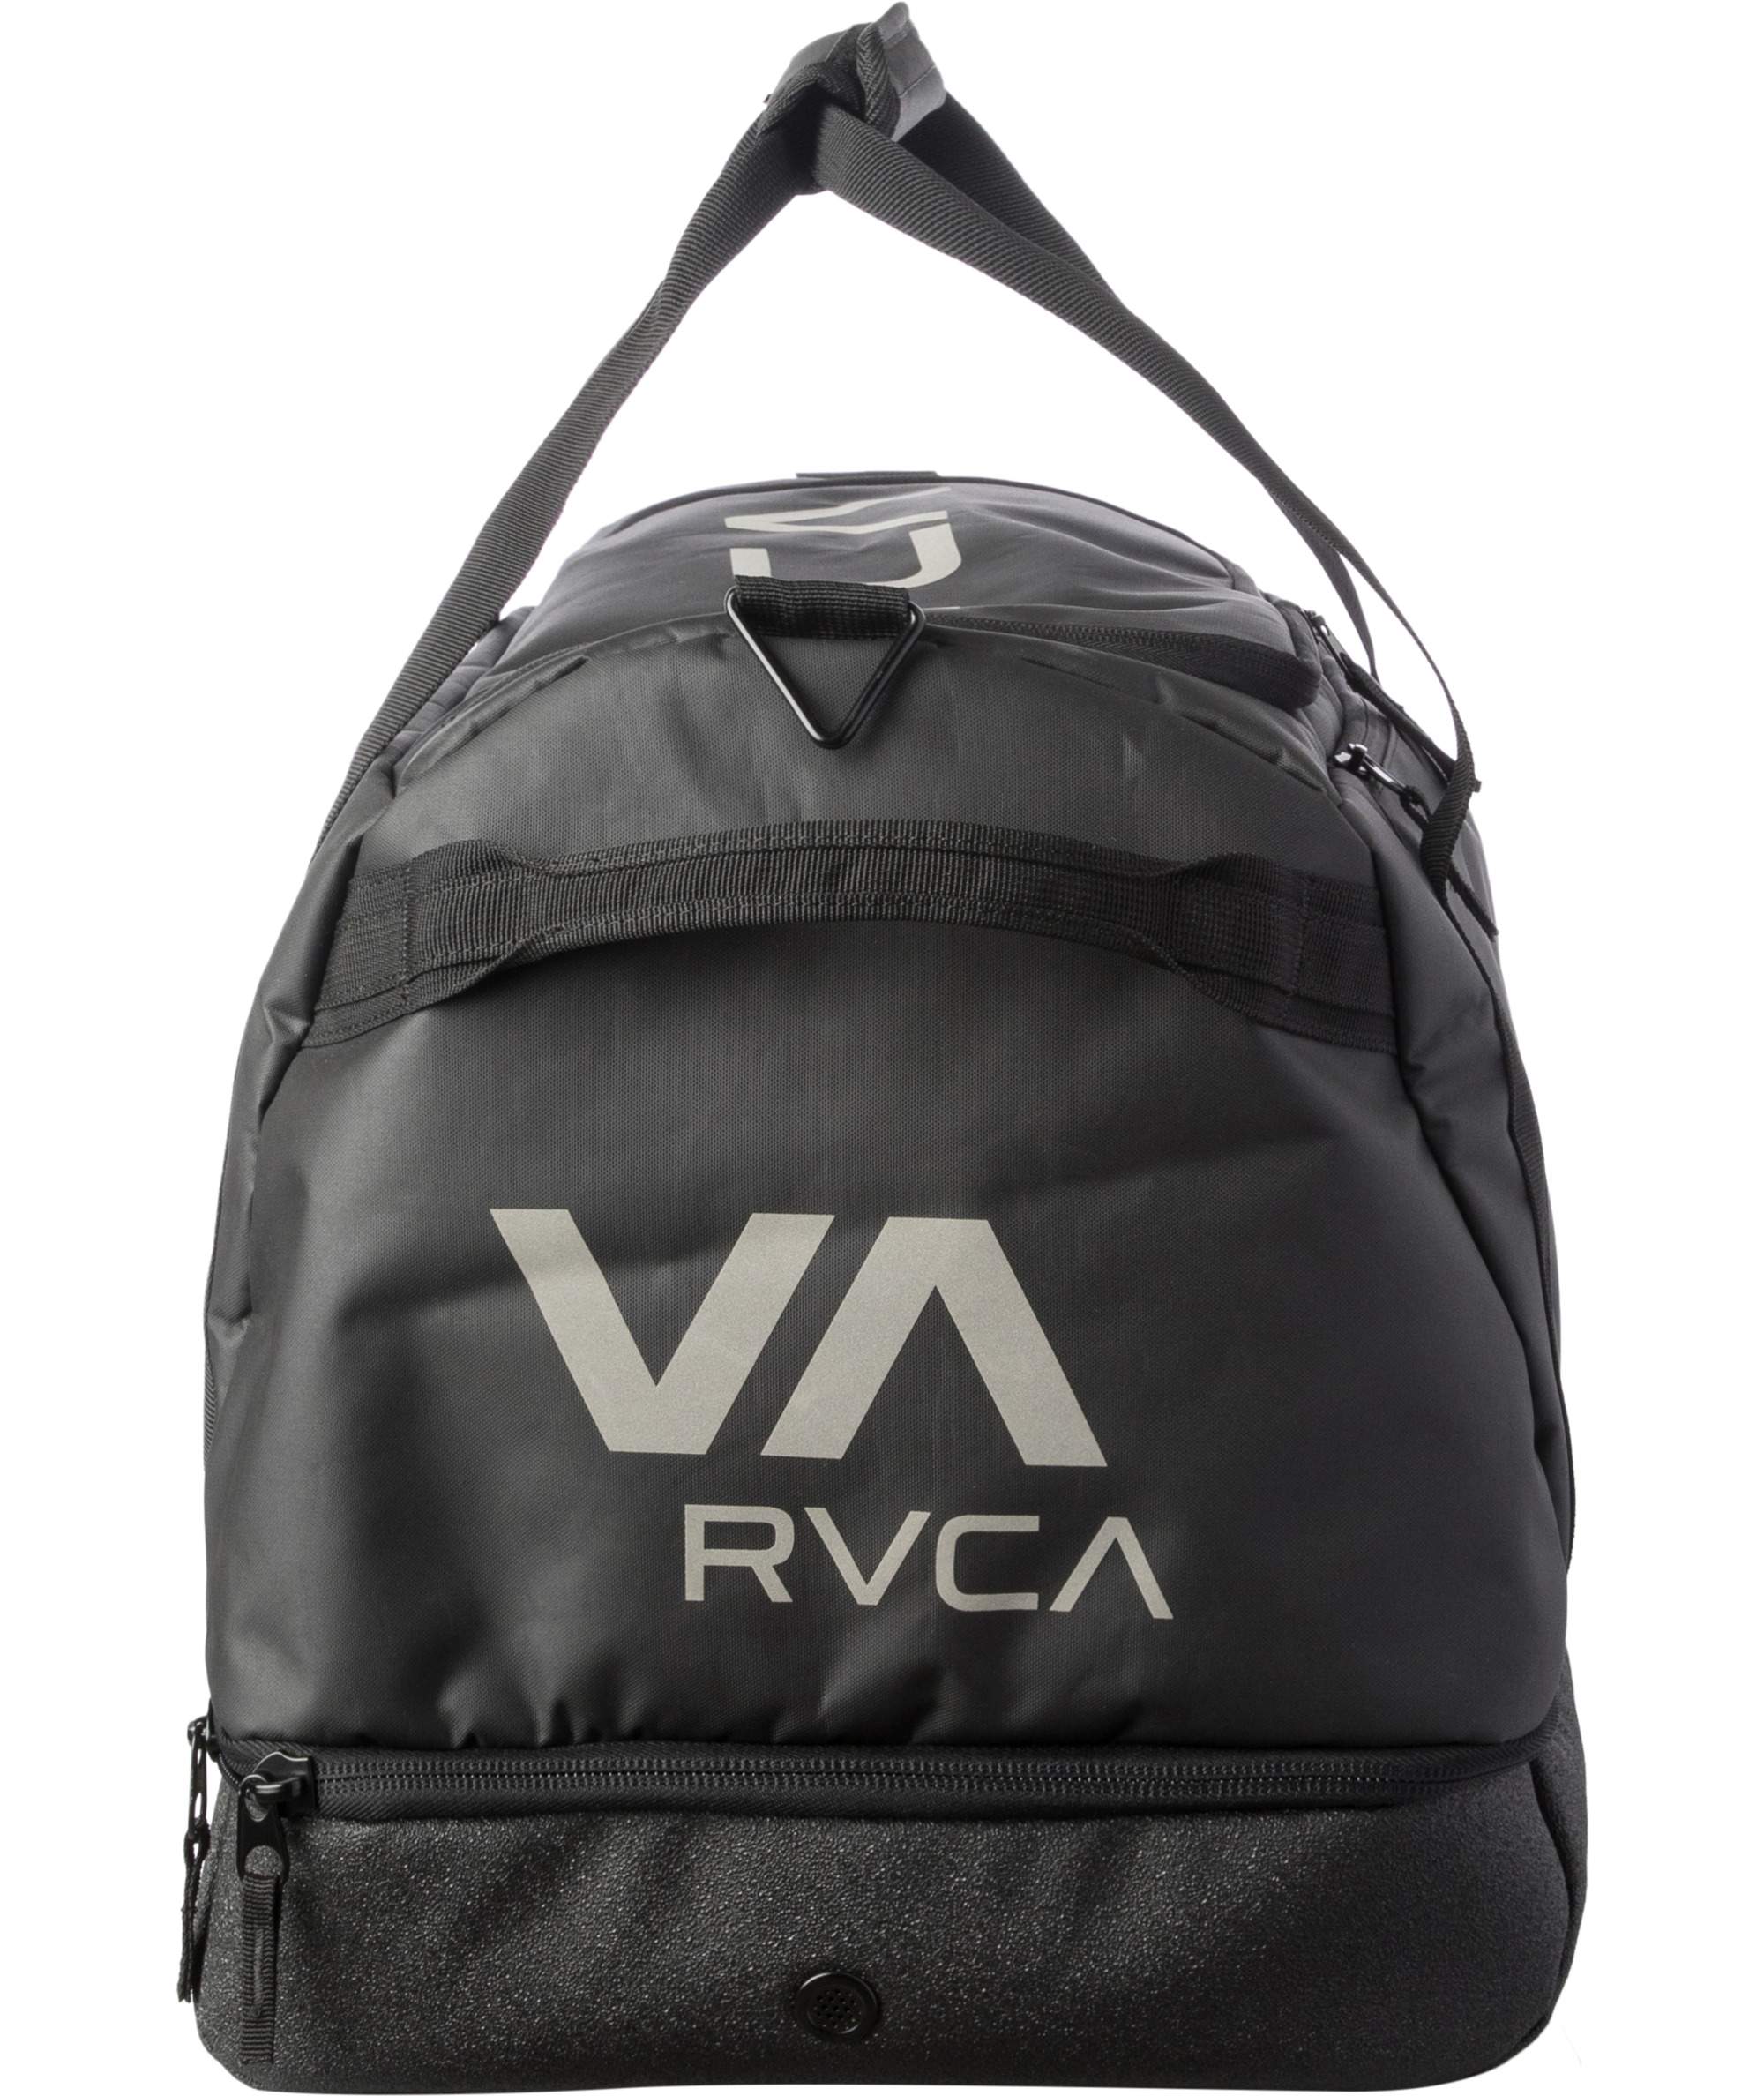 RVCA- VA Gear Bag